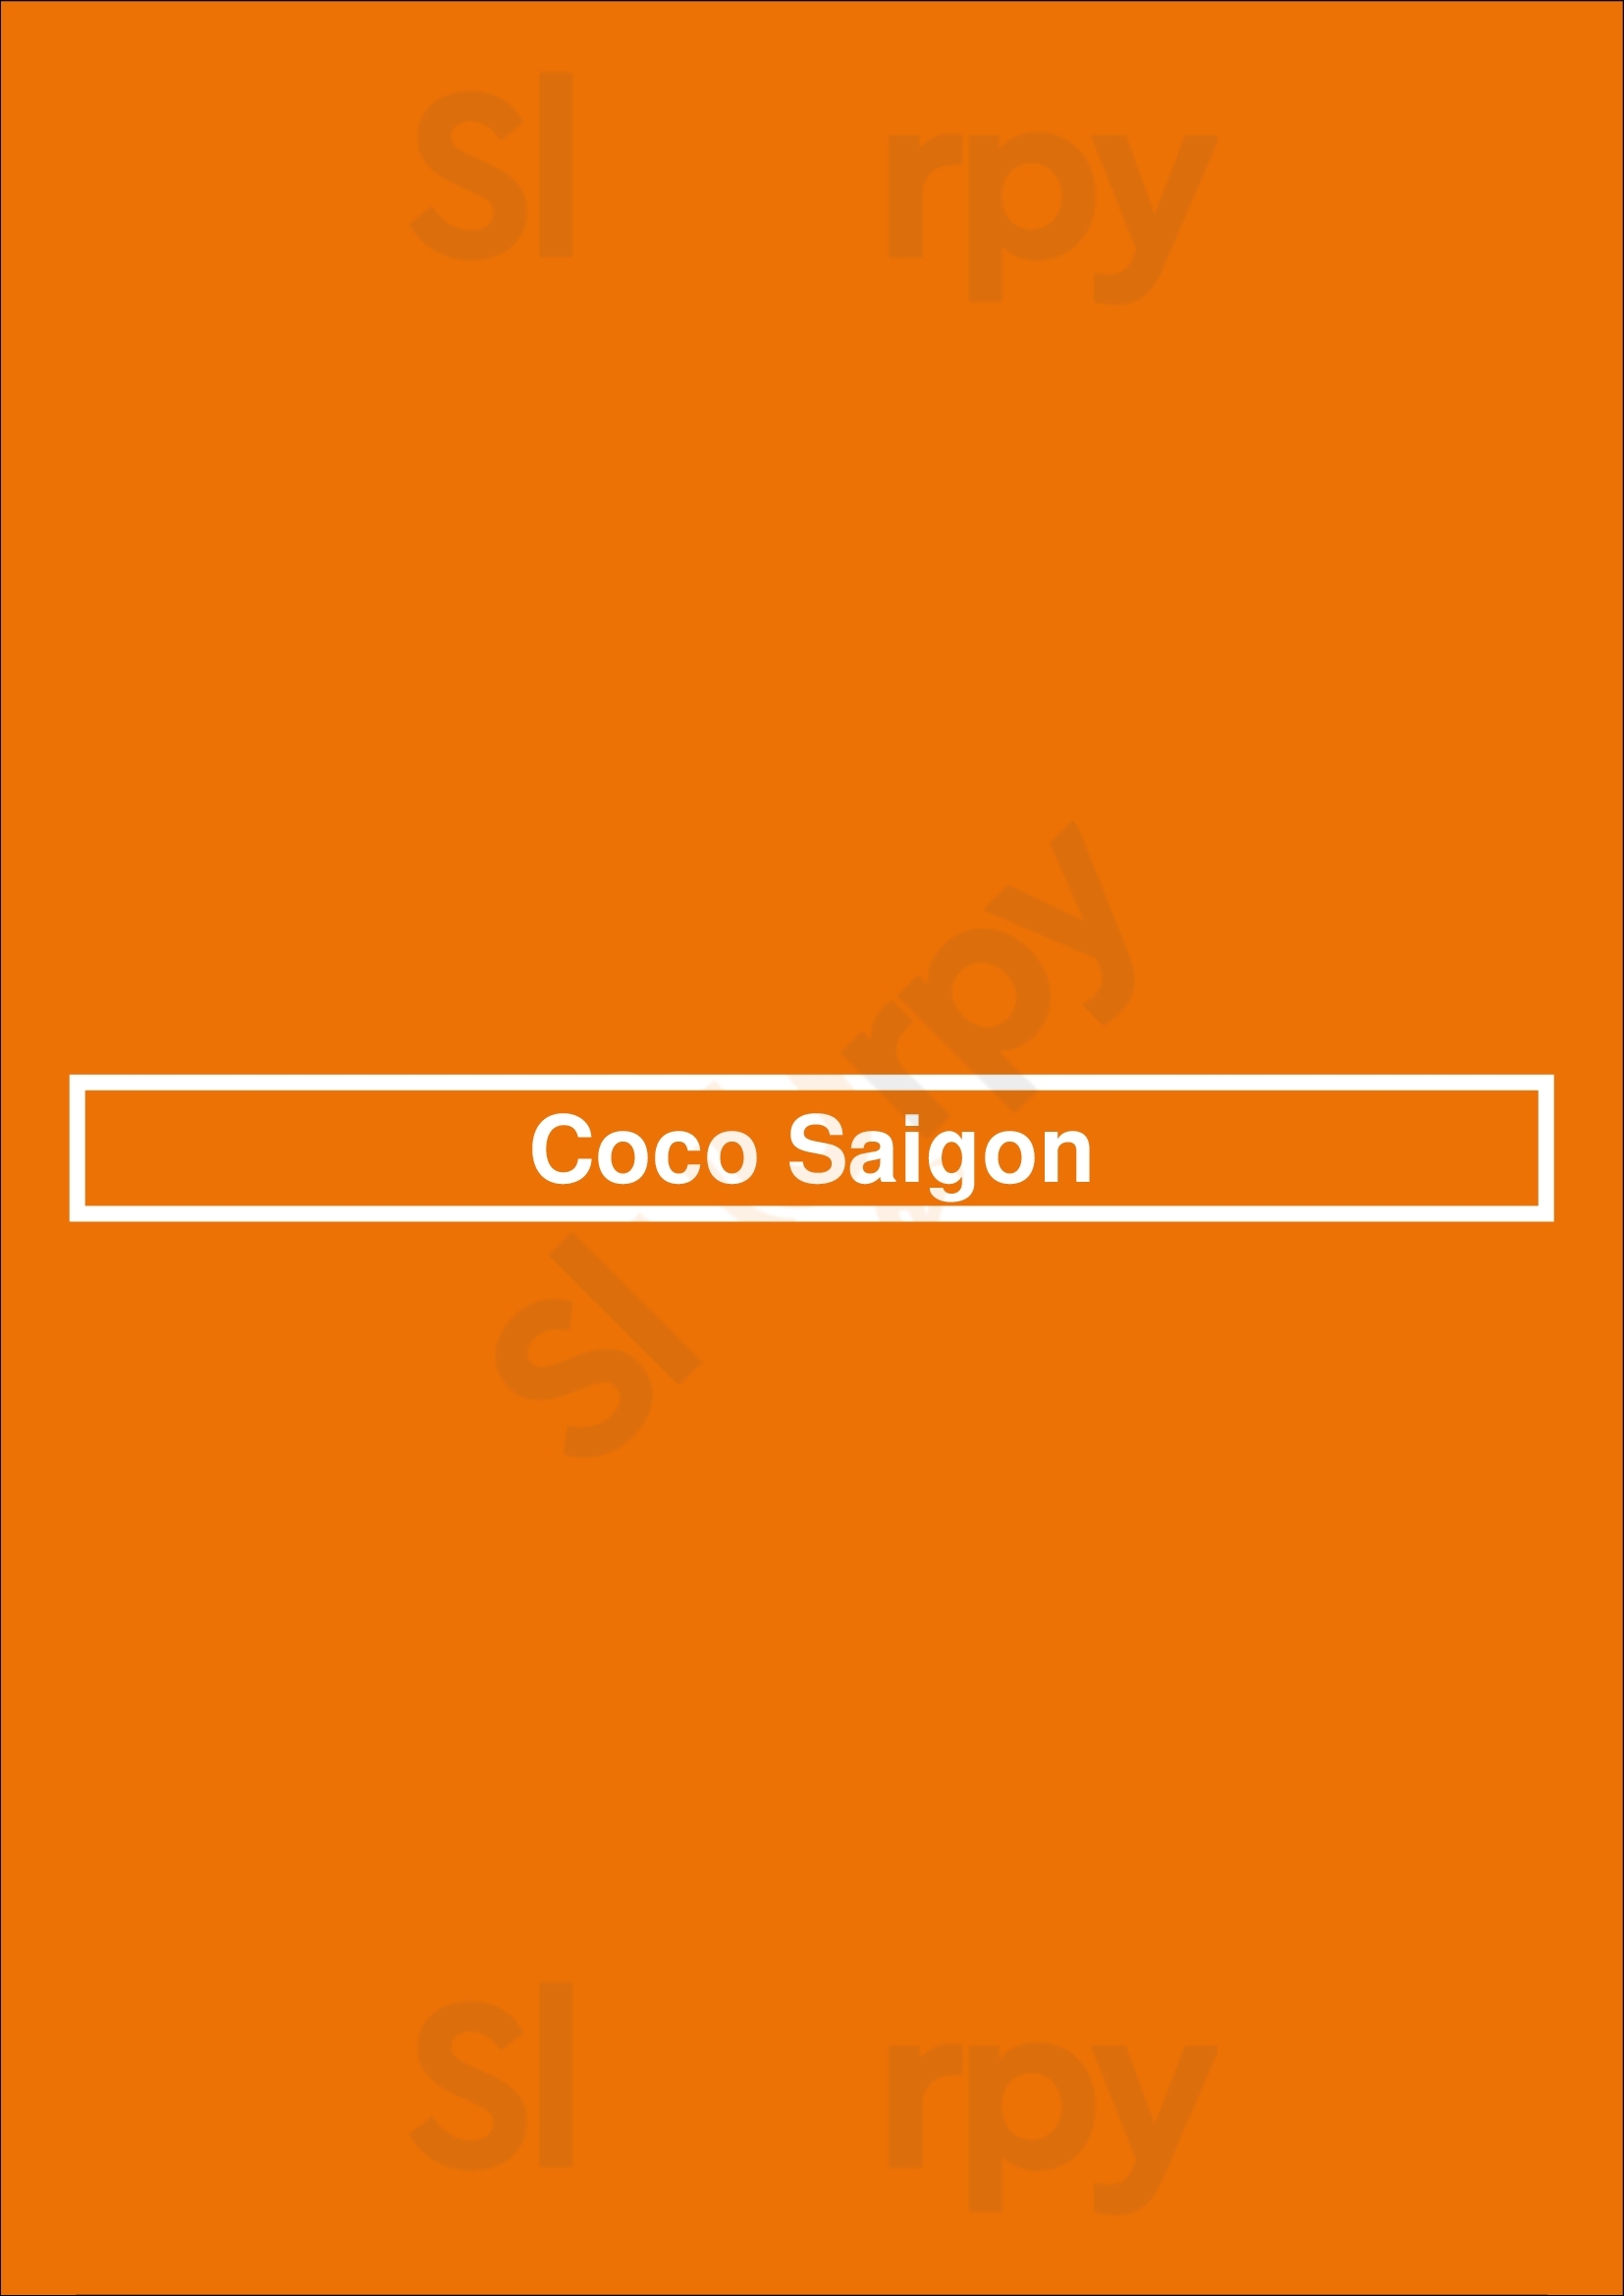 Coco Saigon Noordwijk Menu - 1